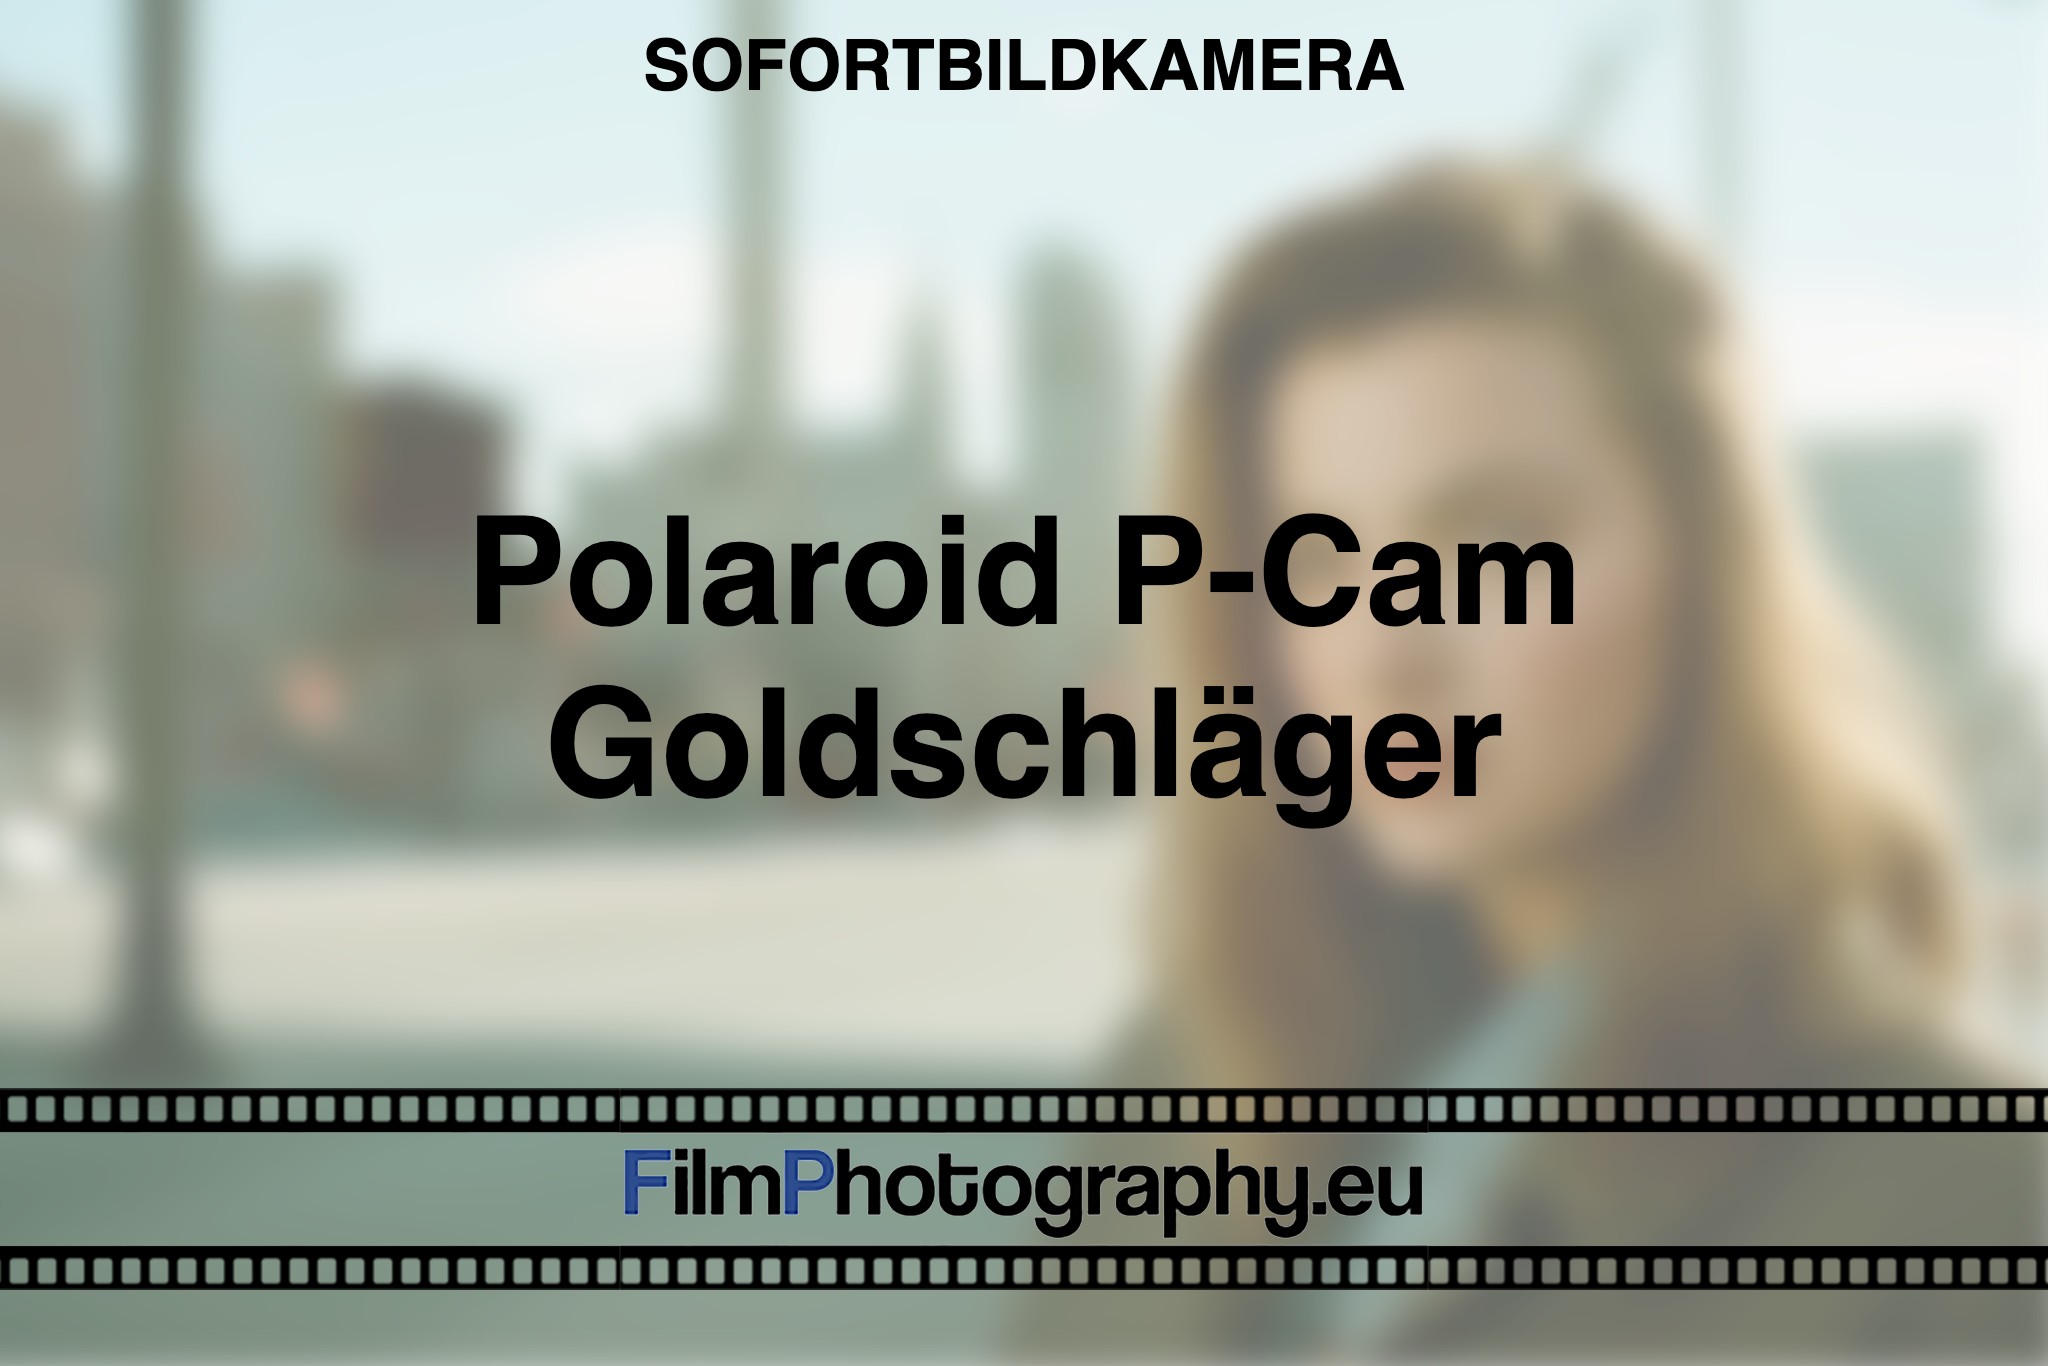 polaroid-p-cam-goldschlaeger-sofortbildkamera-bnv